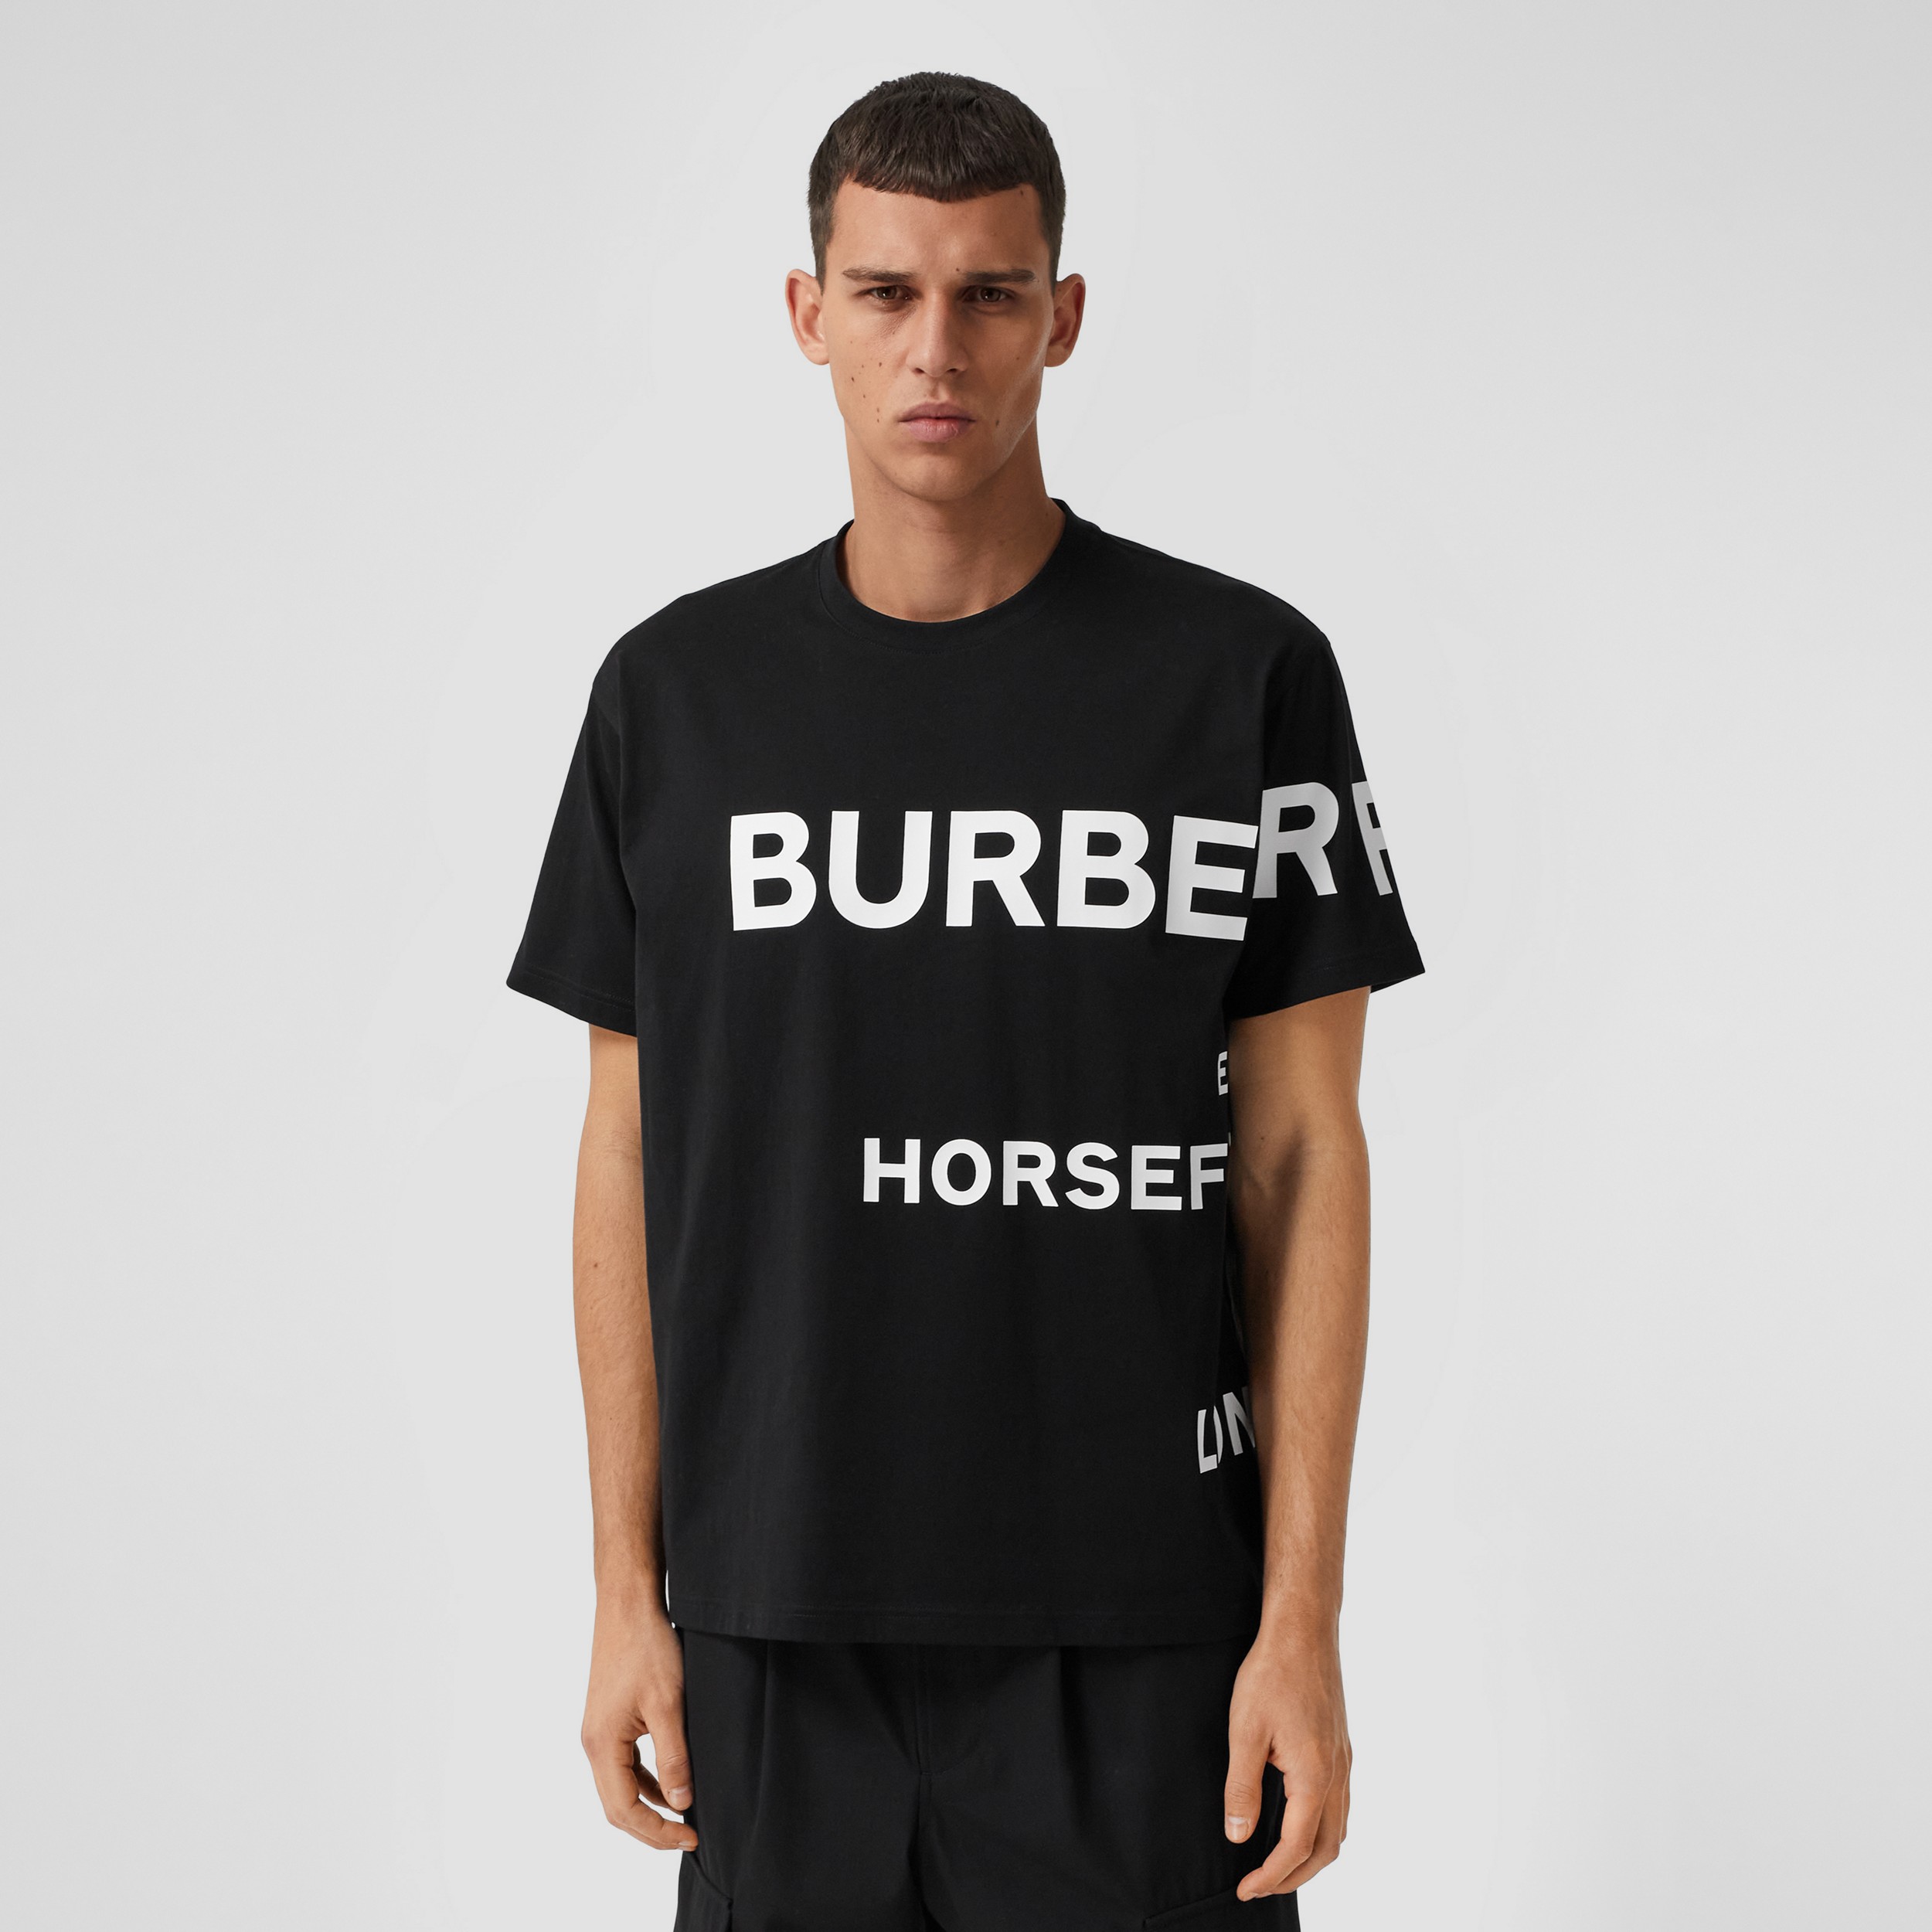 Burberry tee shirt - philipshigh.co.uk